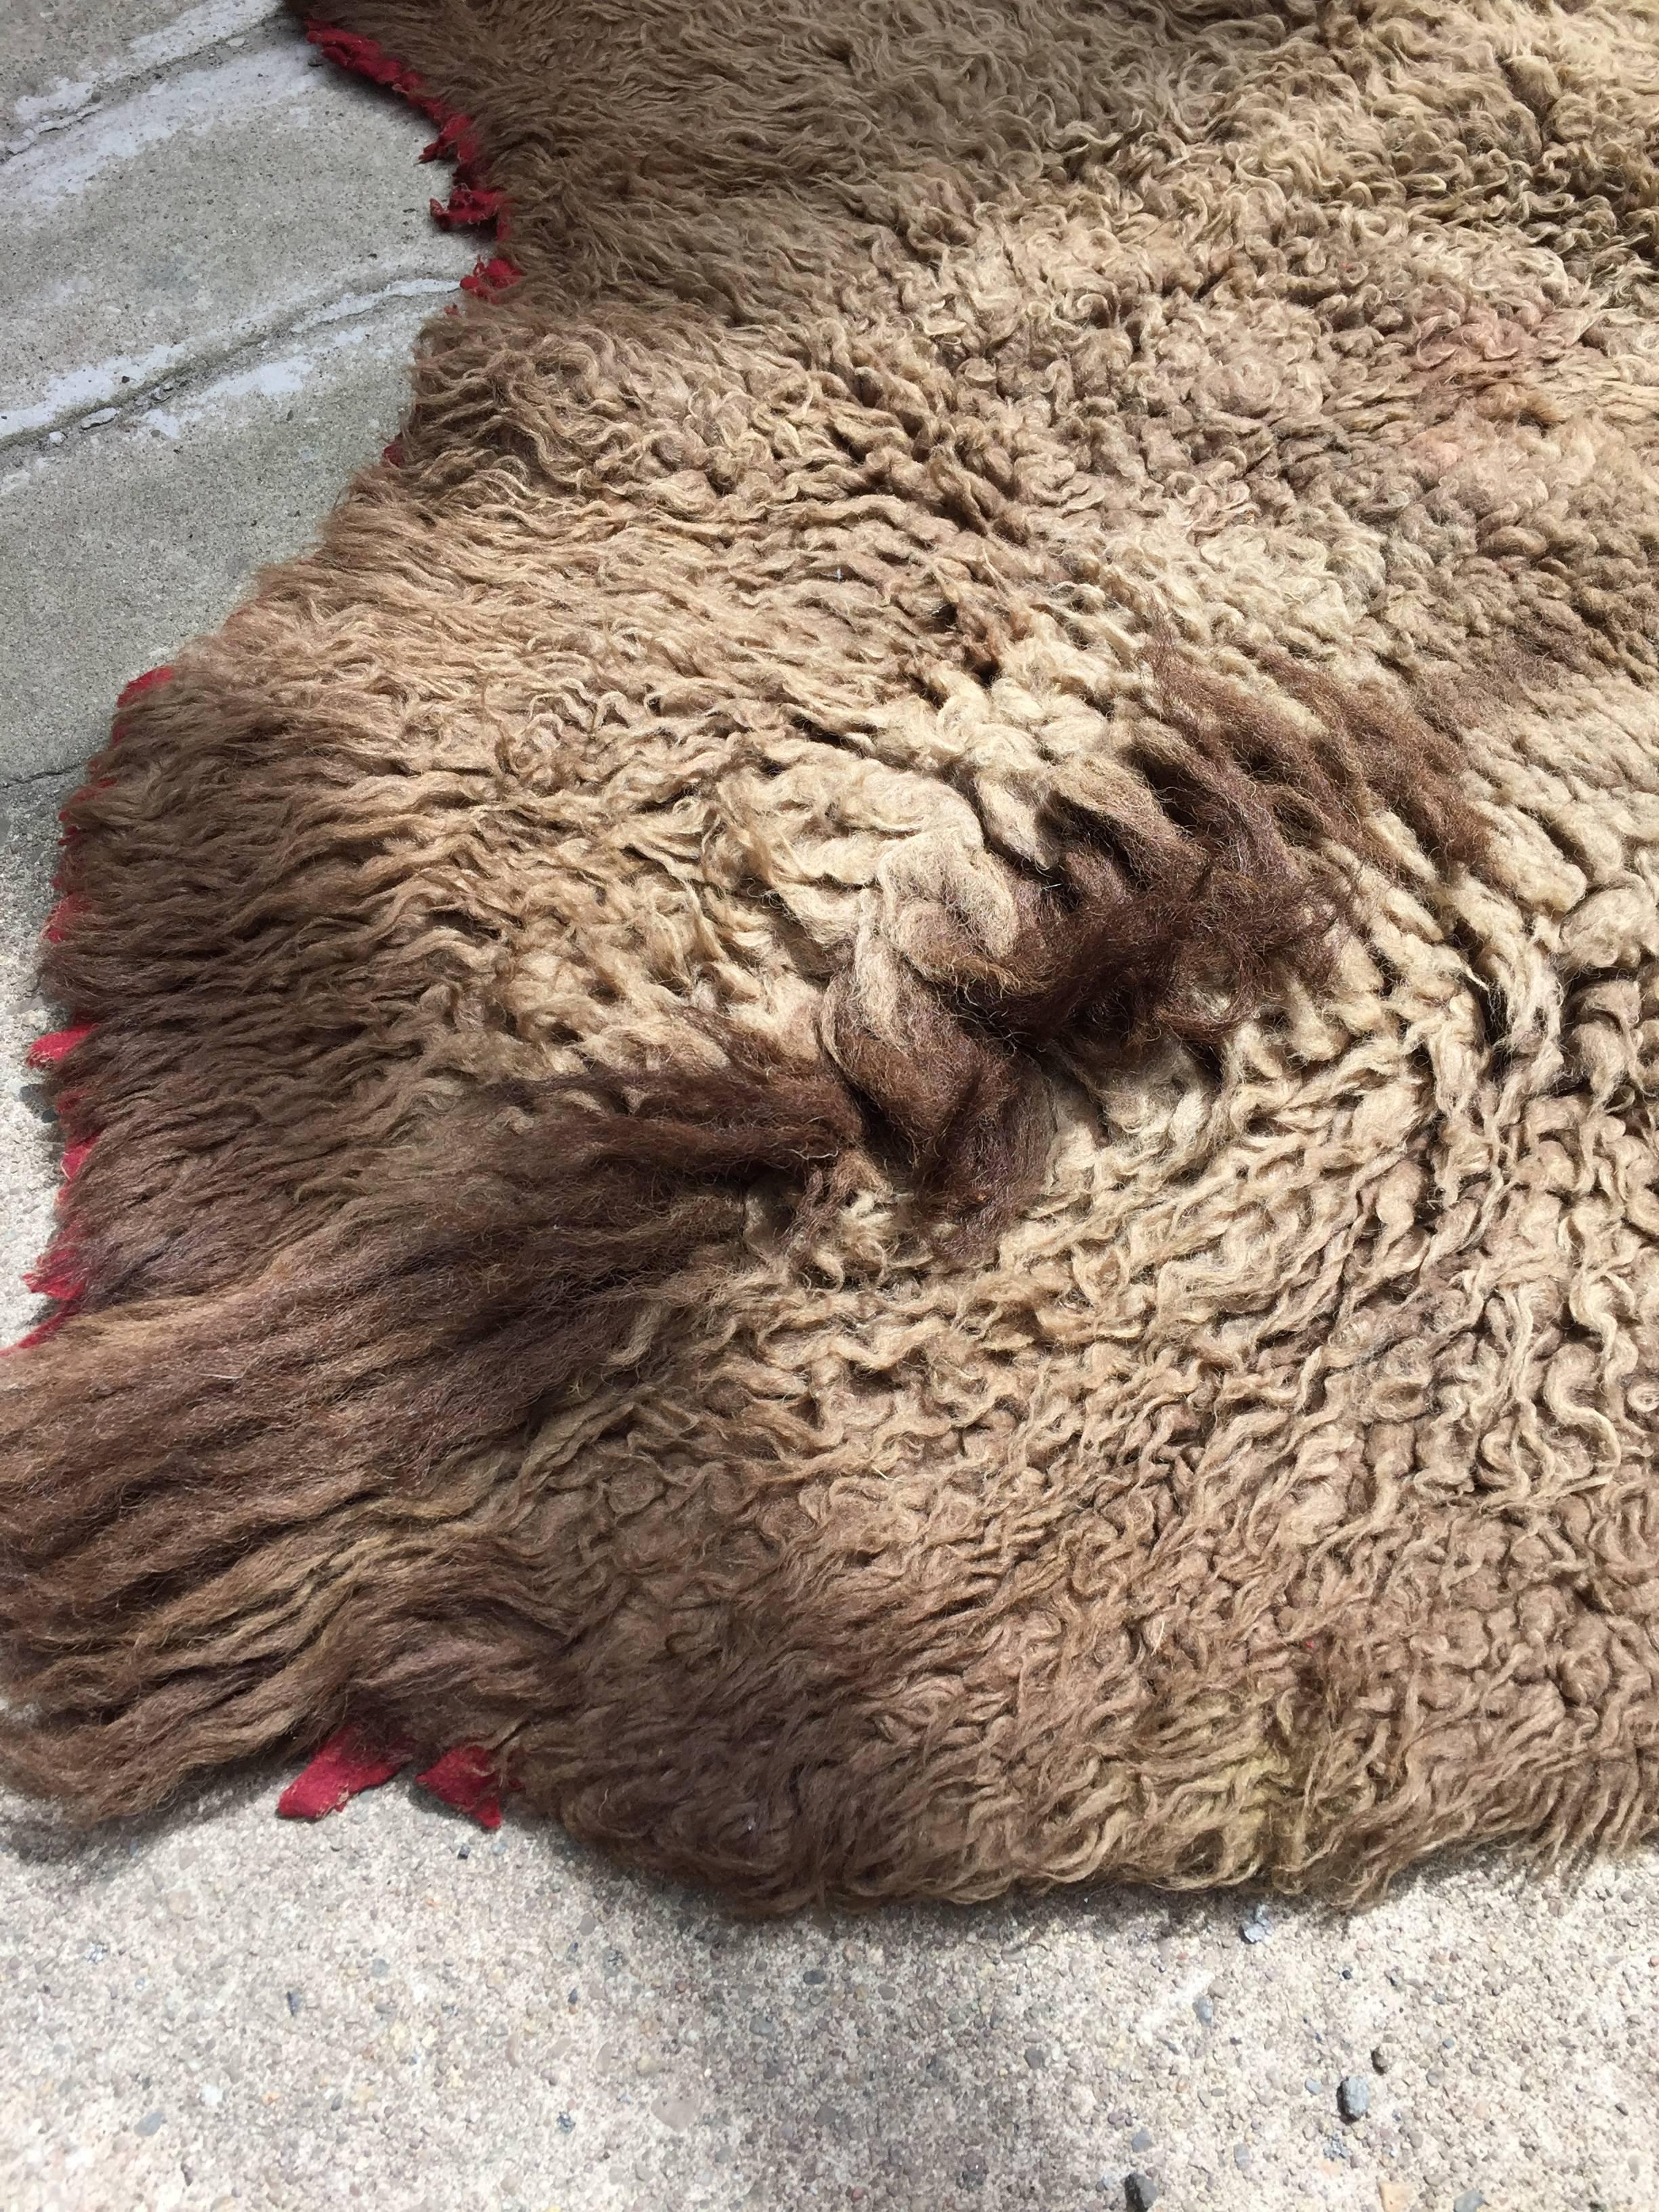 buffalo skin rug